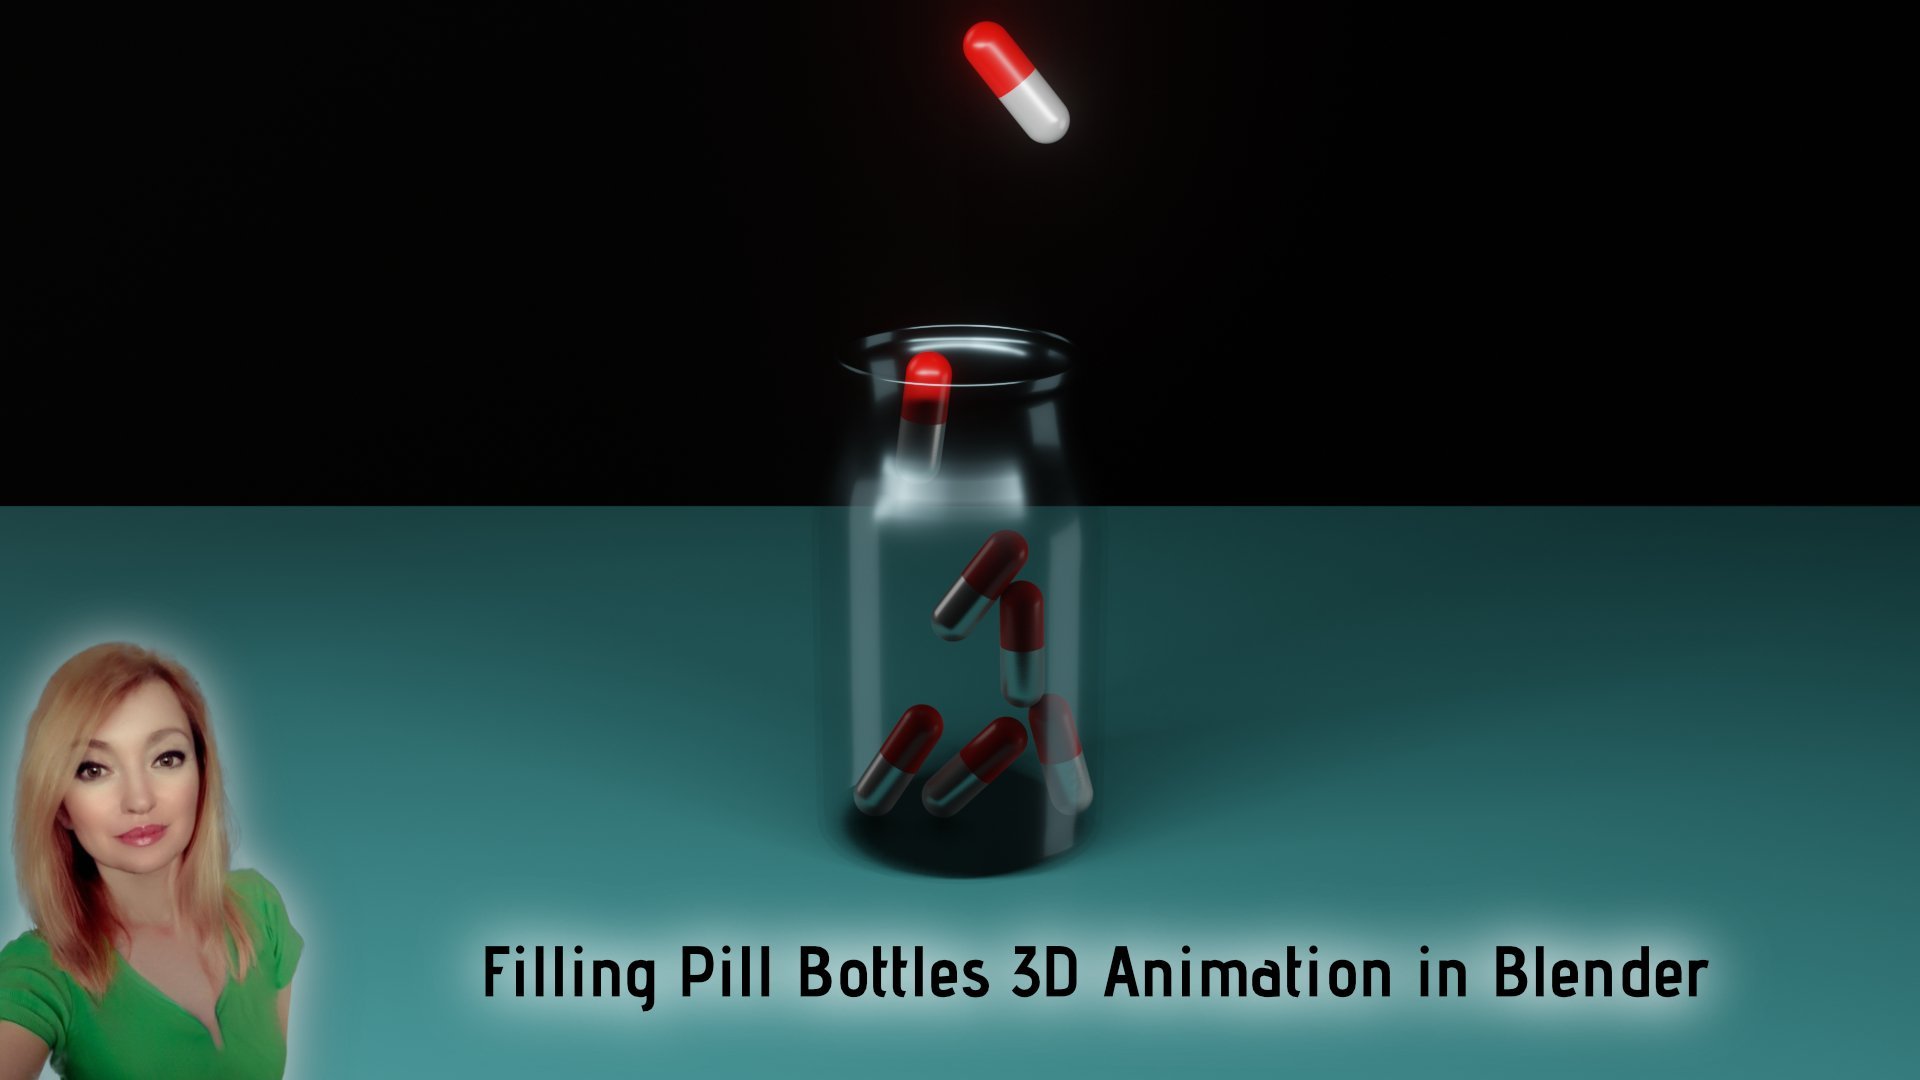 Filling Pill Bottles 3D Animation in Blender